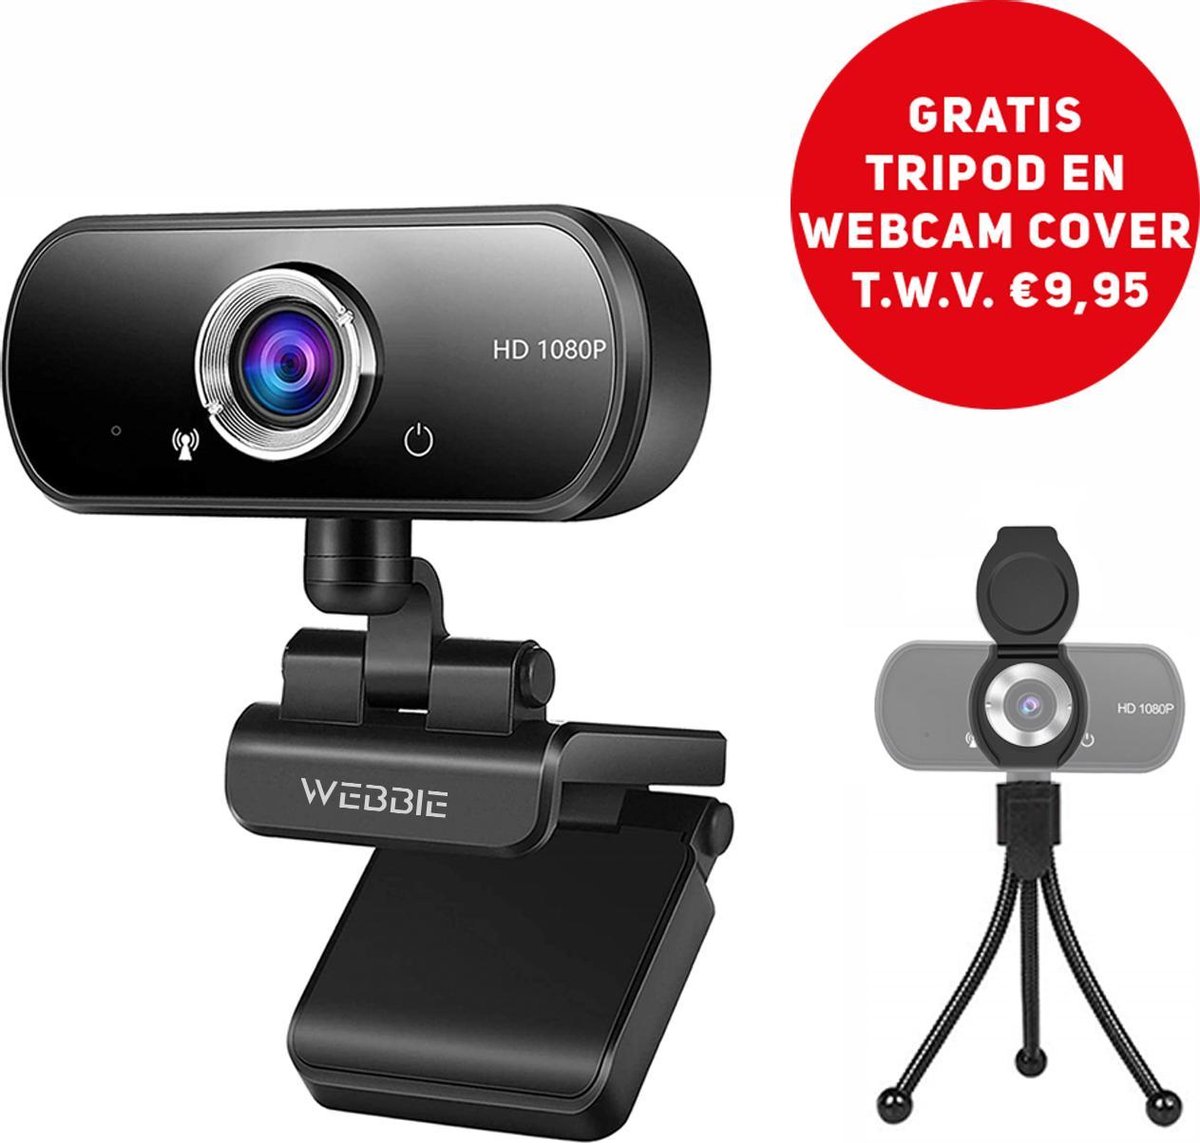 Webbie Webcam Voor PC- Webcam Met Microfoon - Webcams – Thuiswerken - Full HD 1080P Voor Helder Beeld en Geluid – Geschikt voor Windows en Mac - Inclusief Gratis Tripod en Webcam Cover